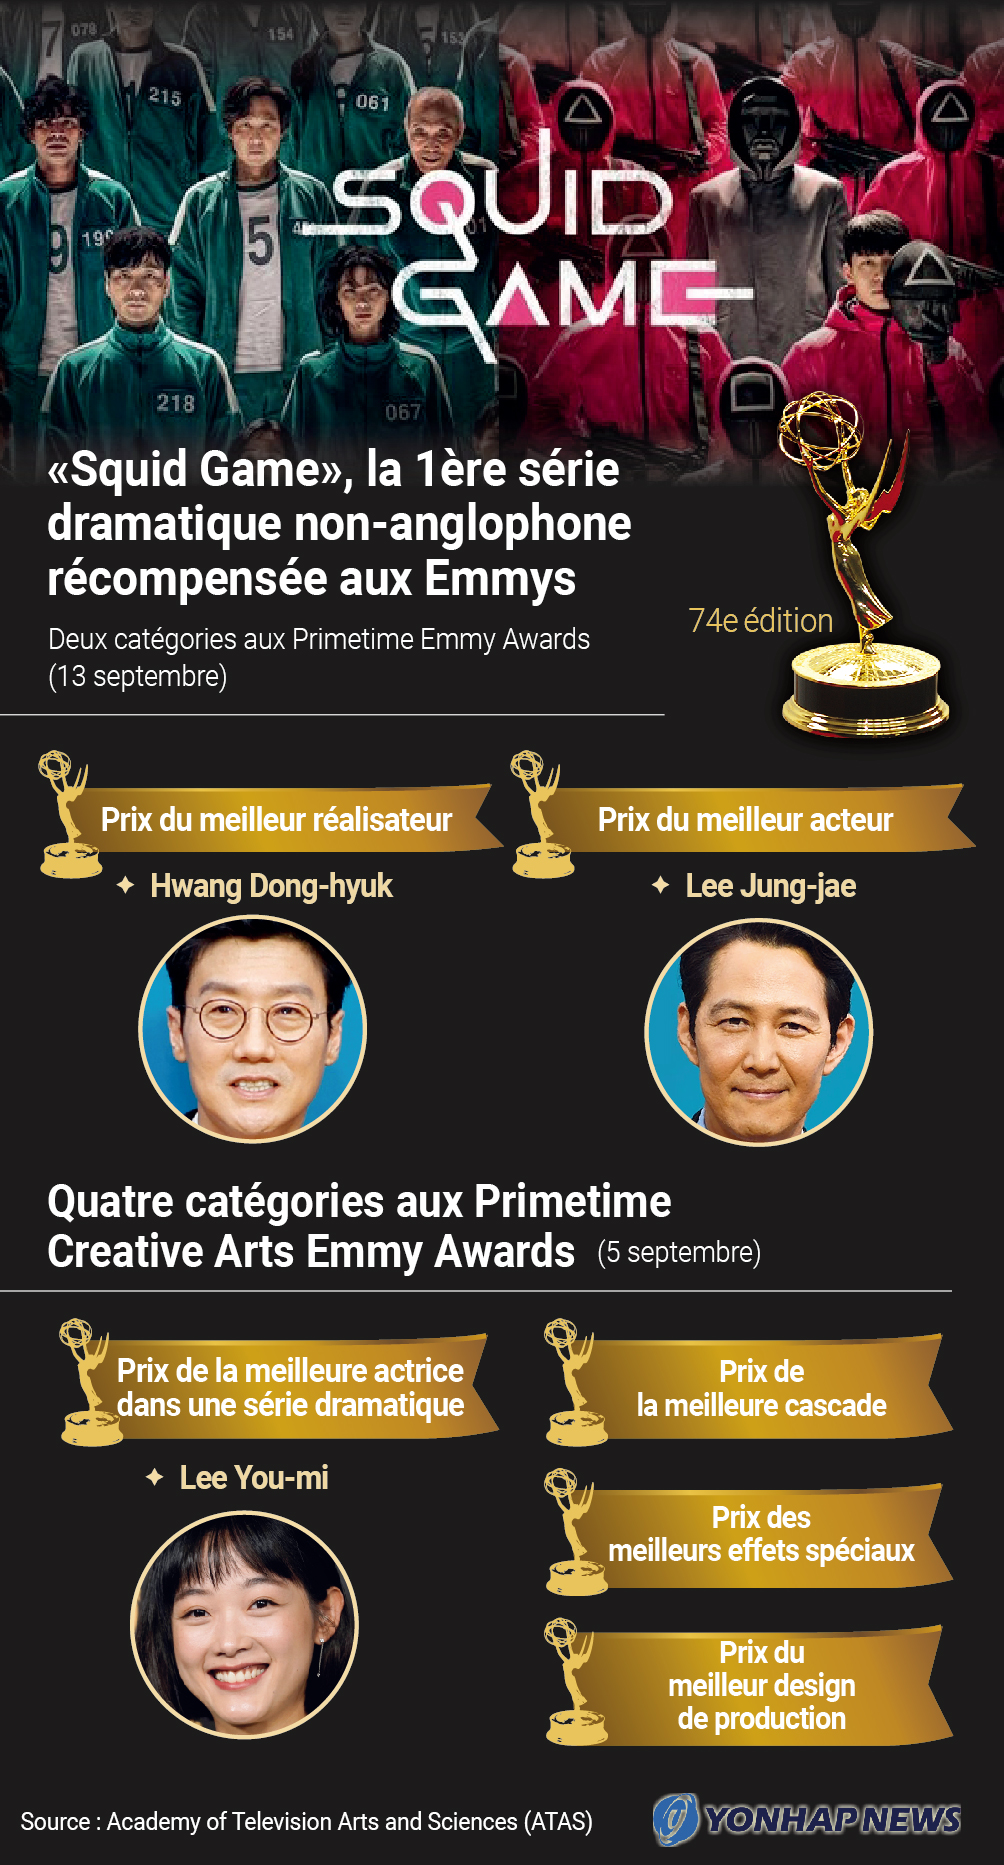 «Squid Game», 1ère série non-anglophone à remporter des Emmys